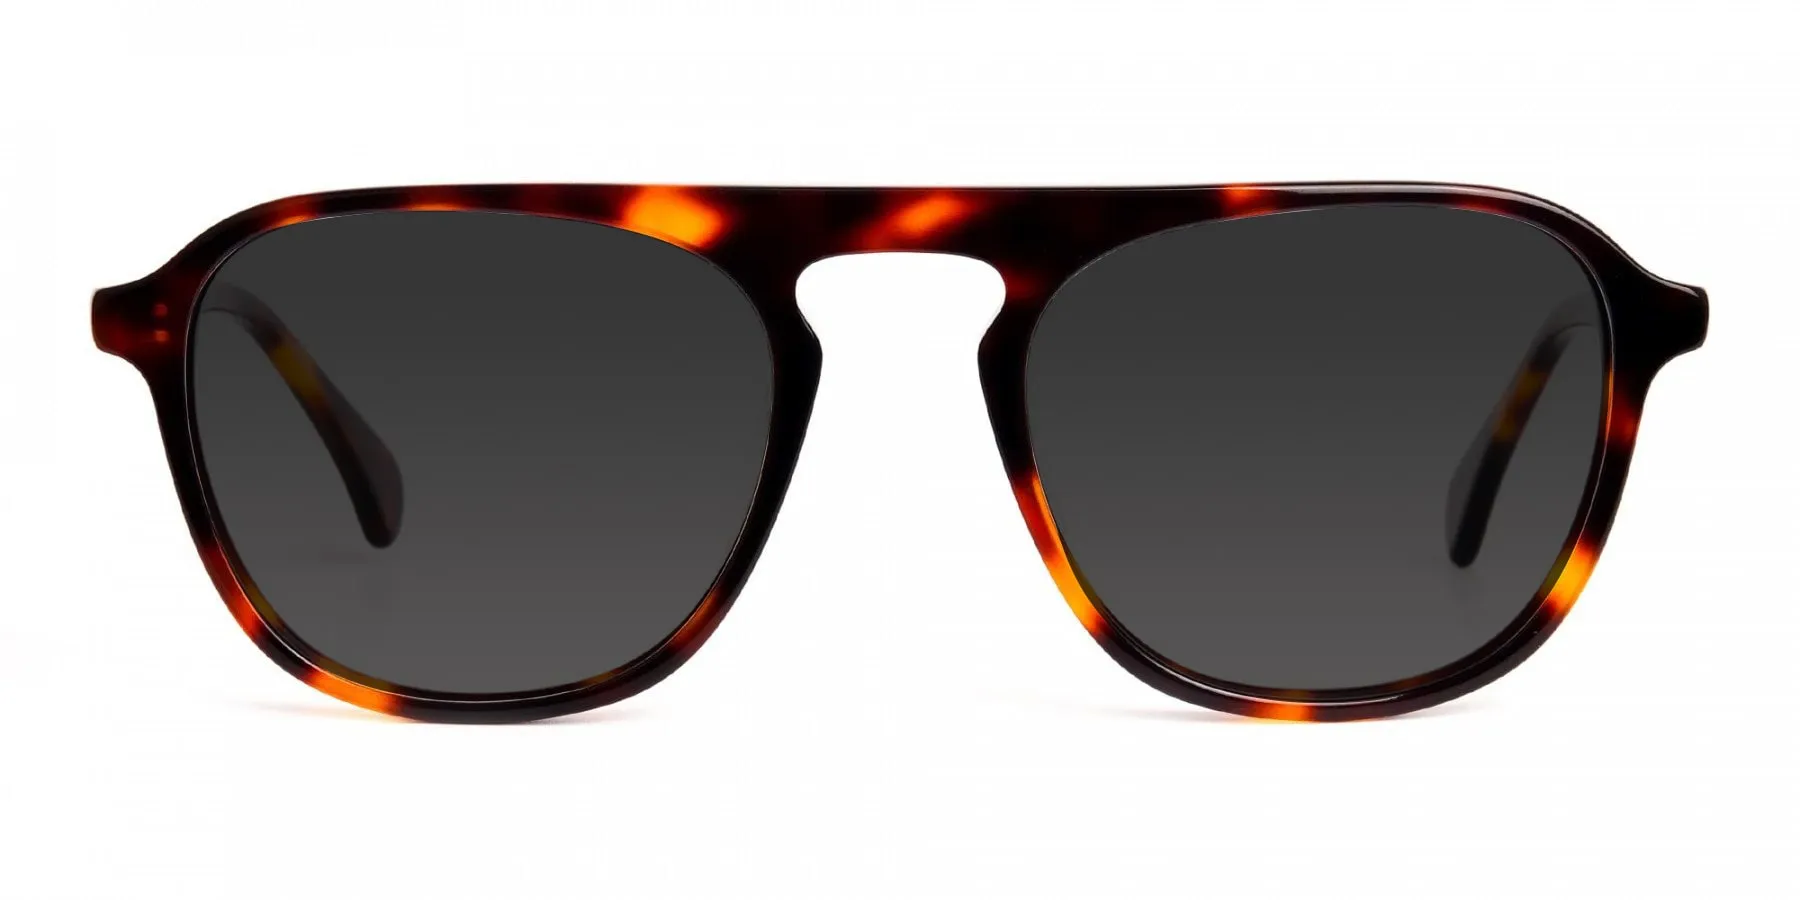 keyhole tortoiseshell sunglasses-2